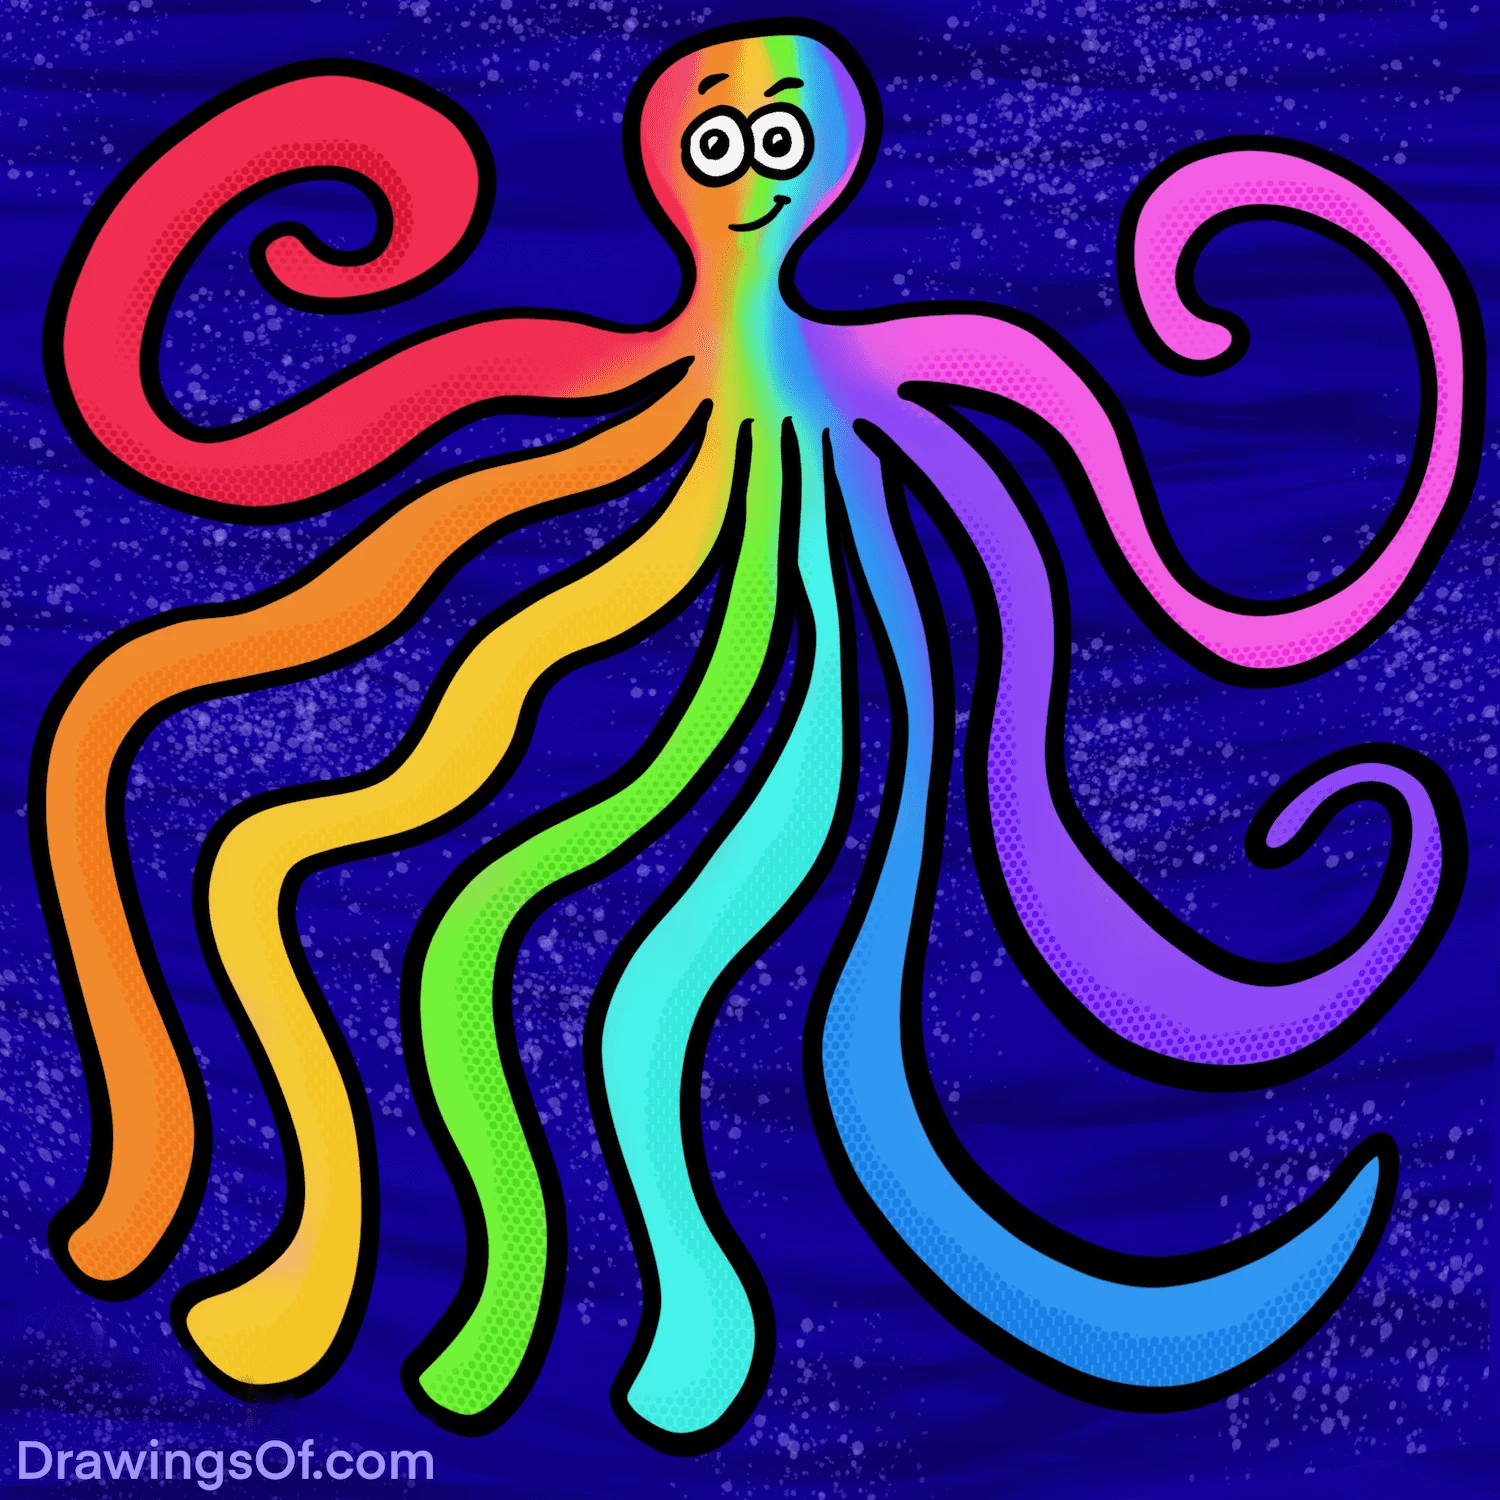 Rainbow octopus art